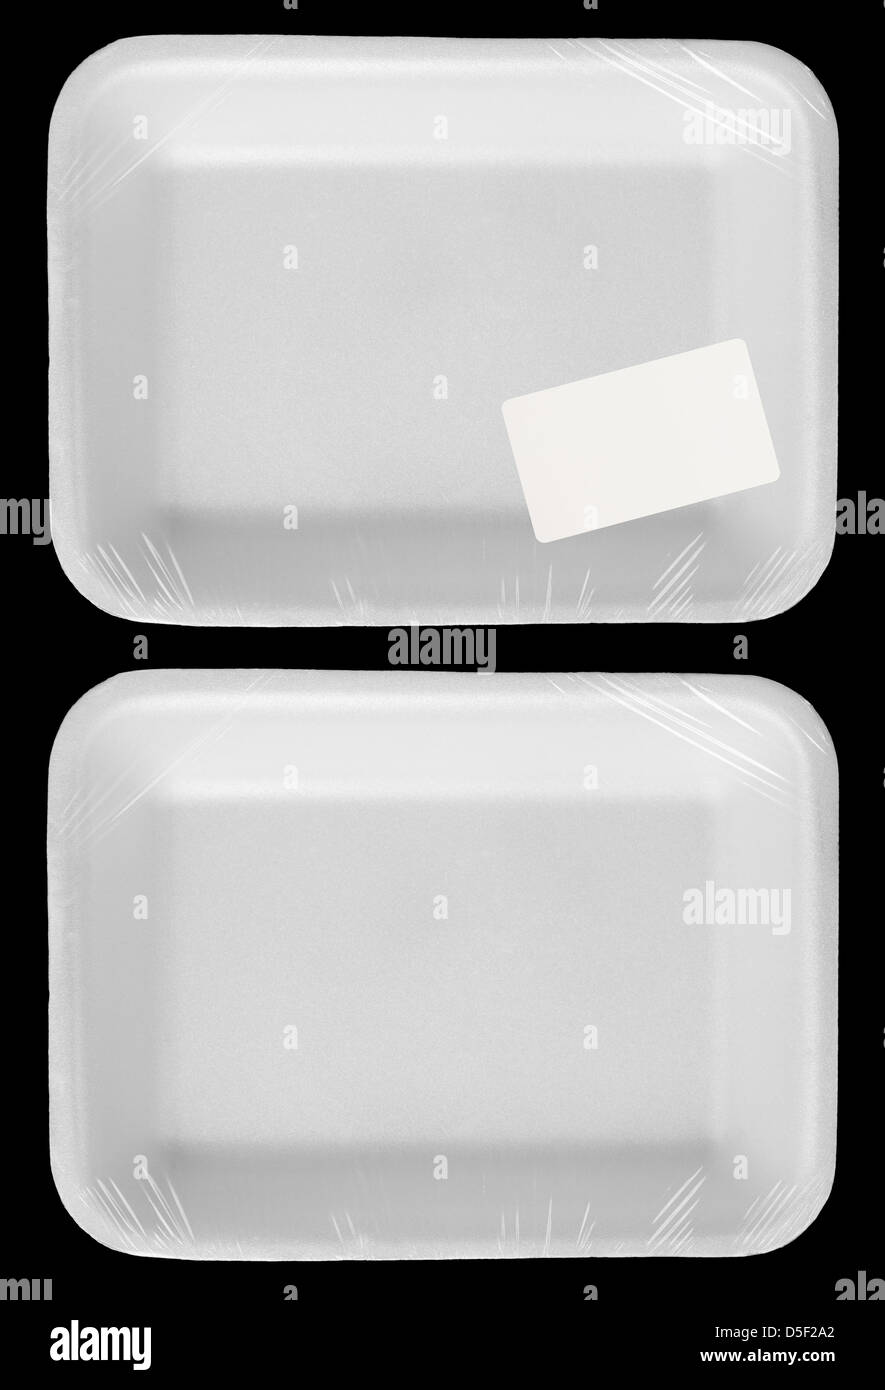 Envuelto vacío blanco de plástico contenedores de alimentos con etiqueta en blanco aislado Foto de stock